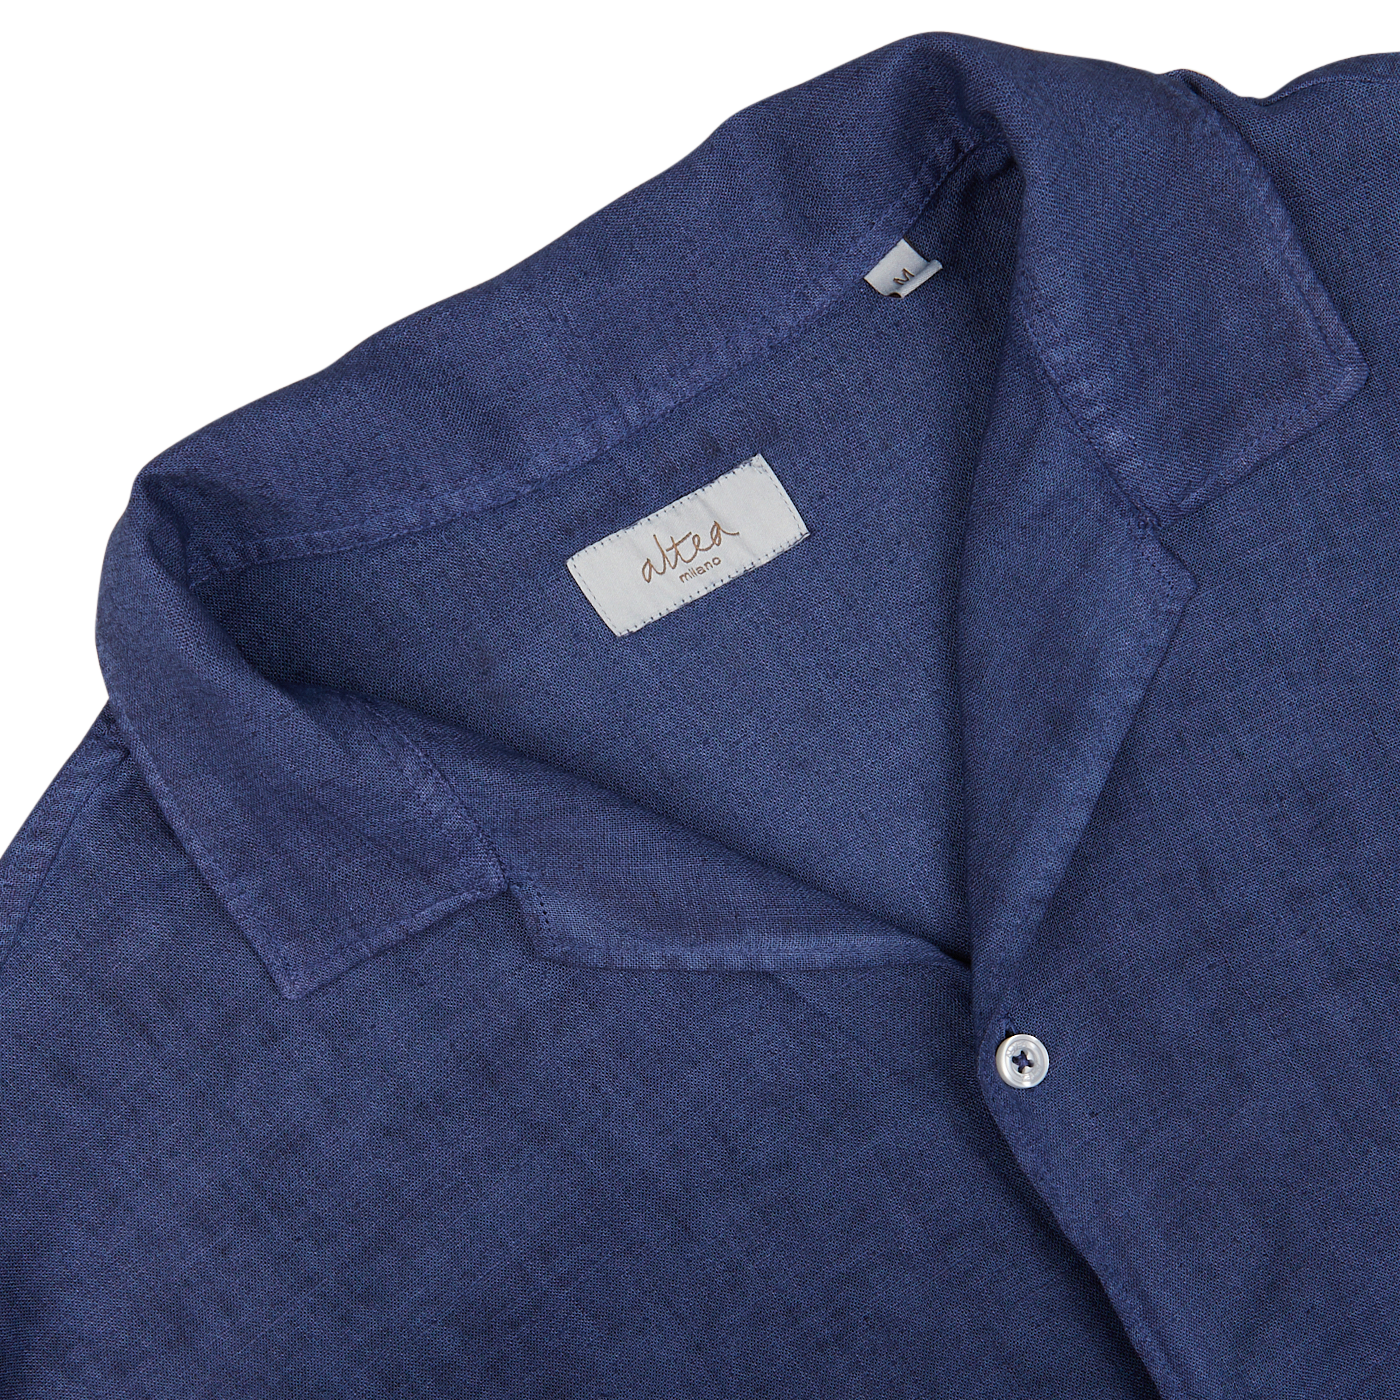 Close-up of an Altea Dark Blue Linen Blend Open Collar Shirt collar and label.